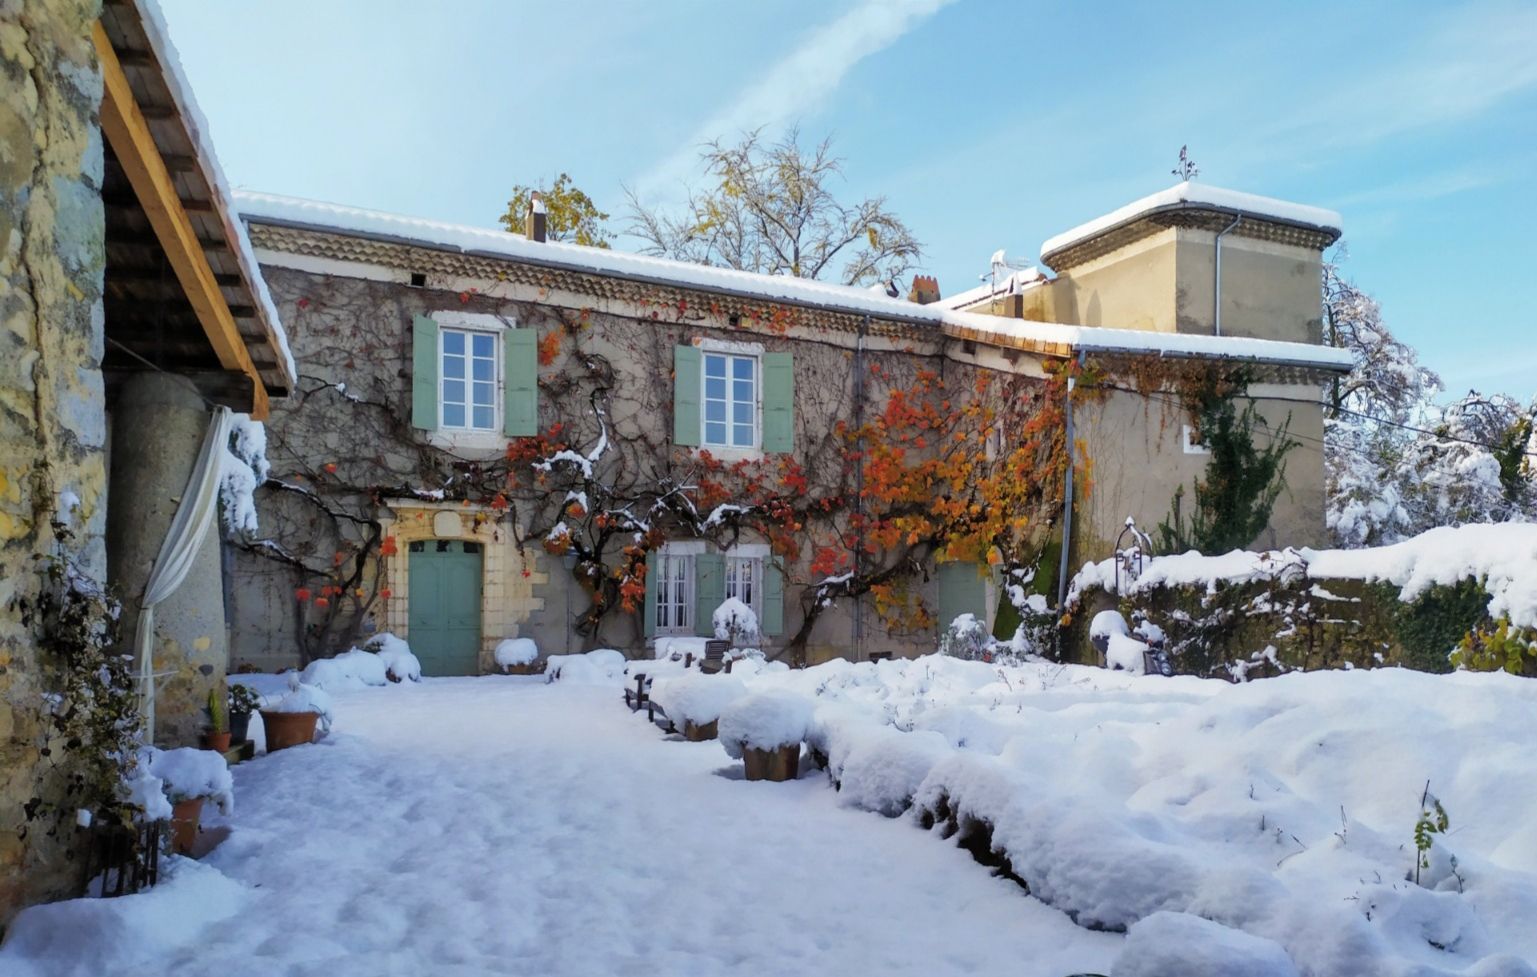 St Lager bressac - Château de Fontblachère sous la neige 2019@Eric Dussiot